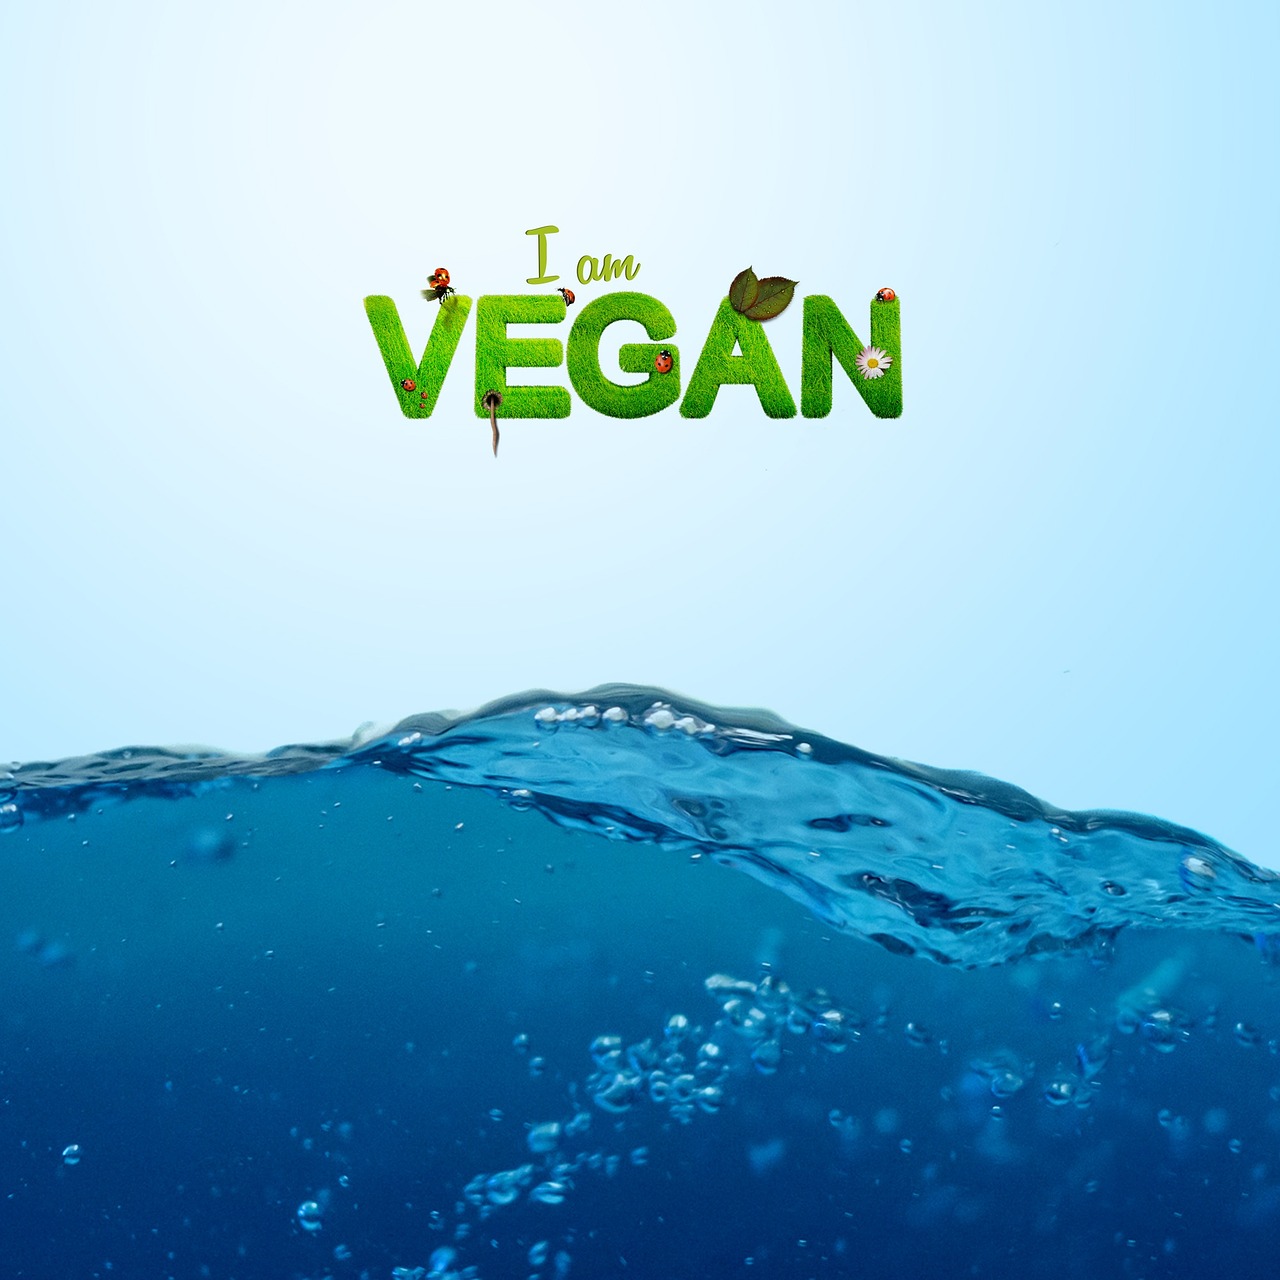 vegan, vegetarian, healthy-1091012.jpg